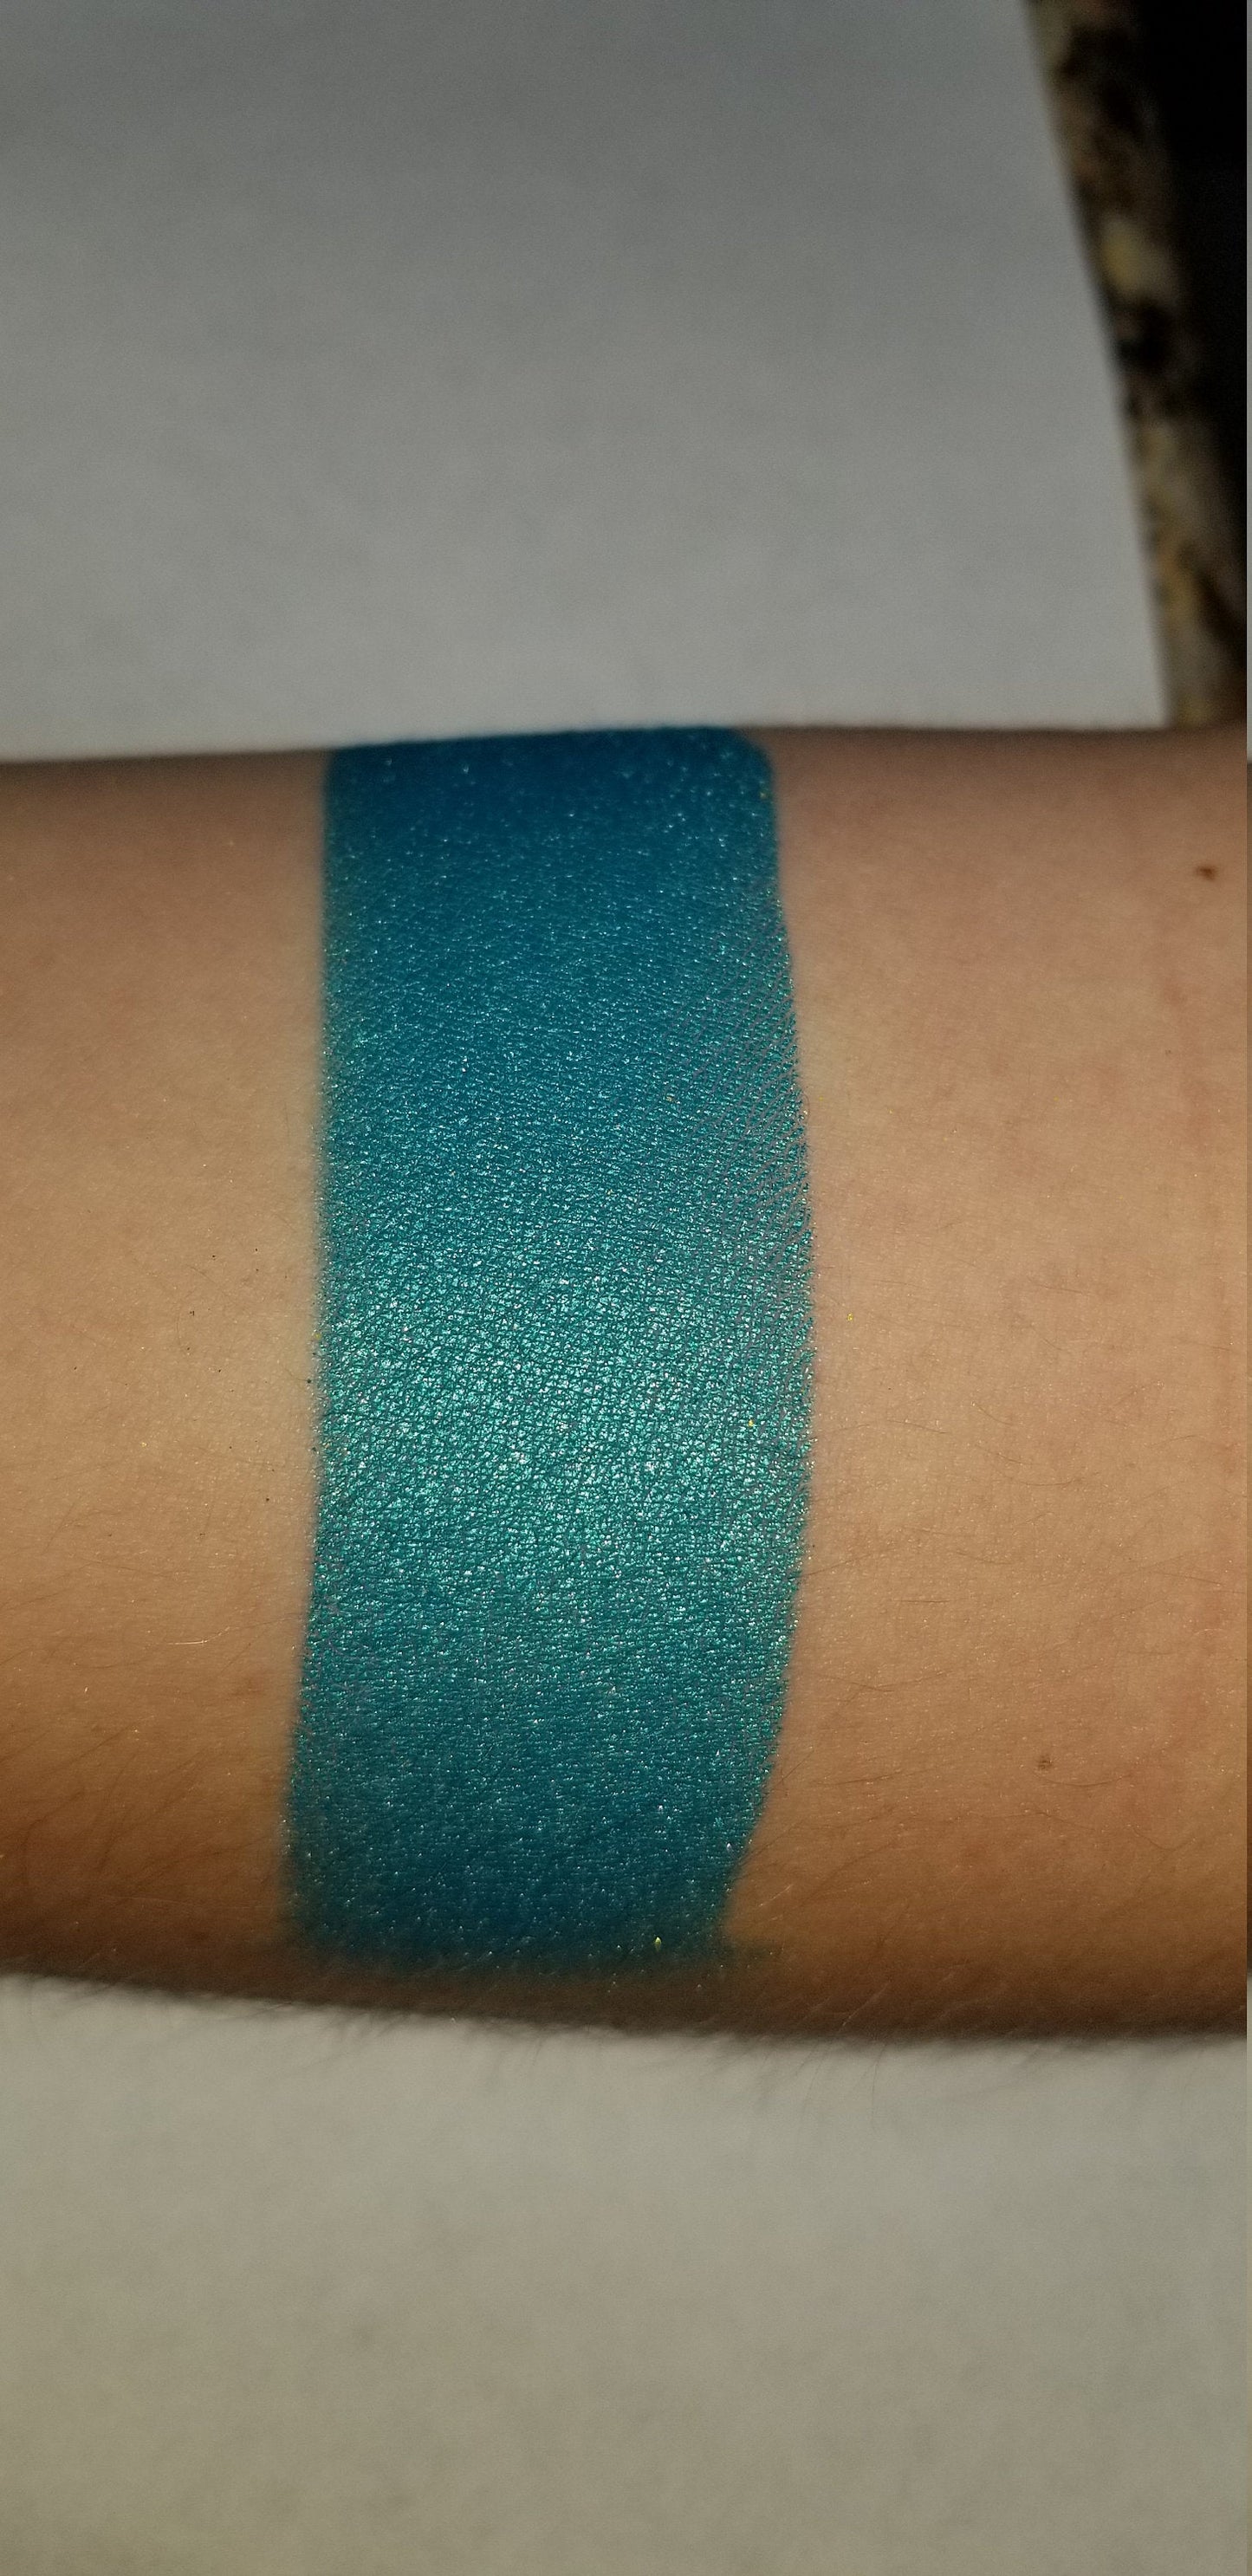 Nymph - Eyeshadow Duochrome Blue Green